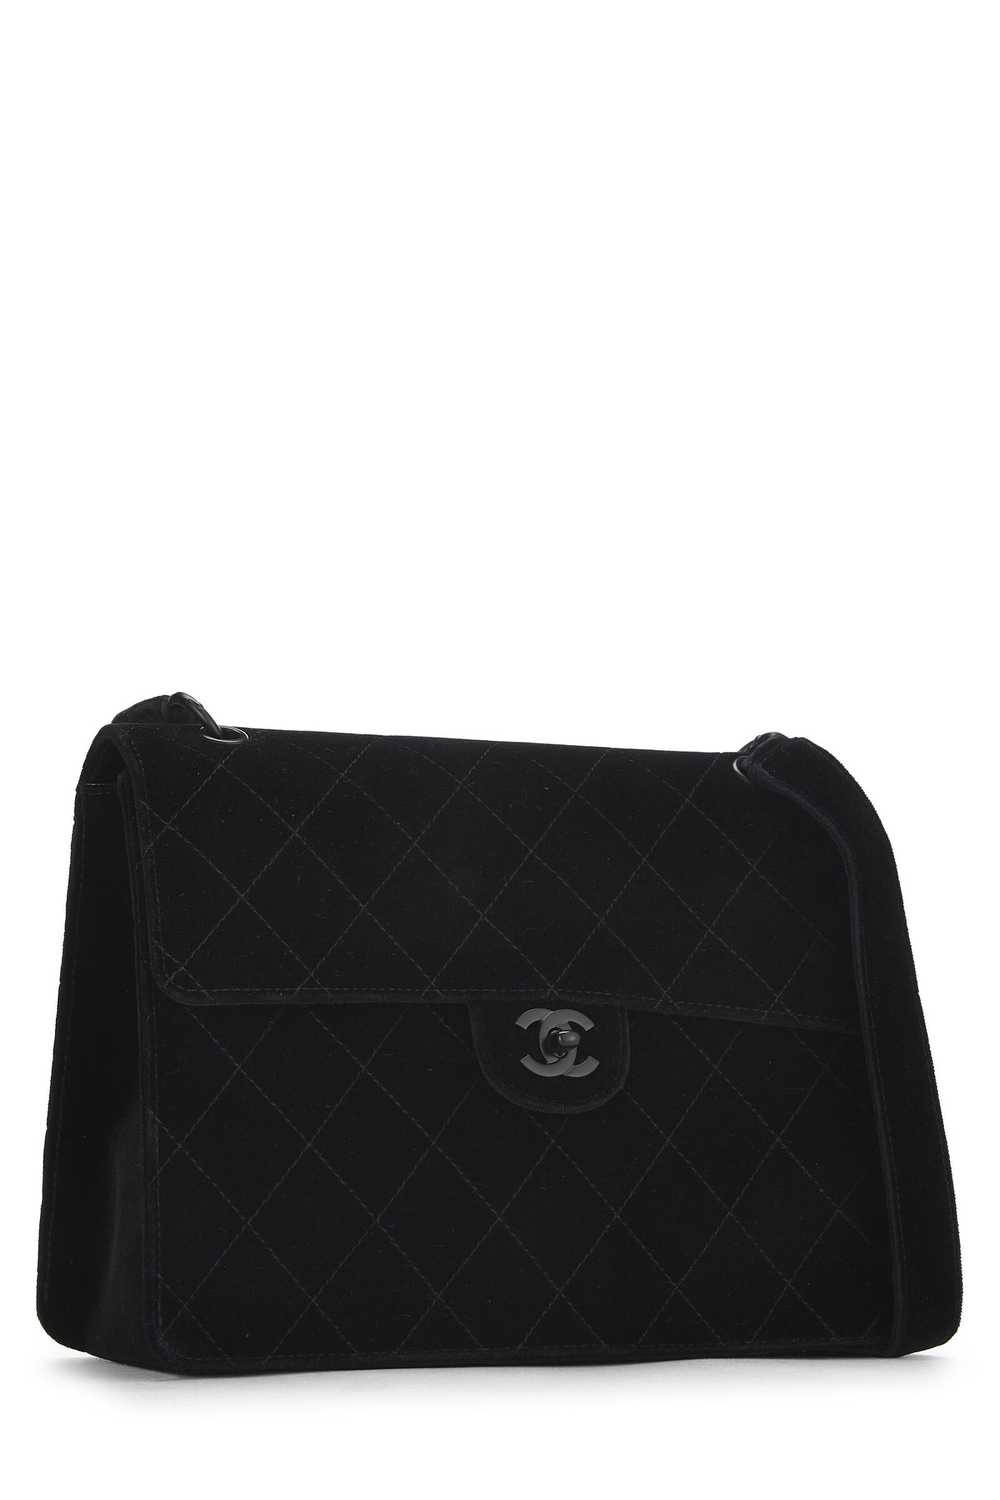 Black Velour Shoulder Bag - image 2